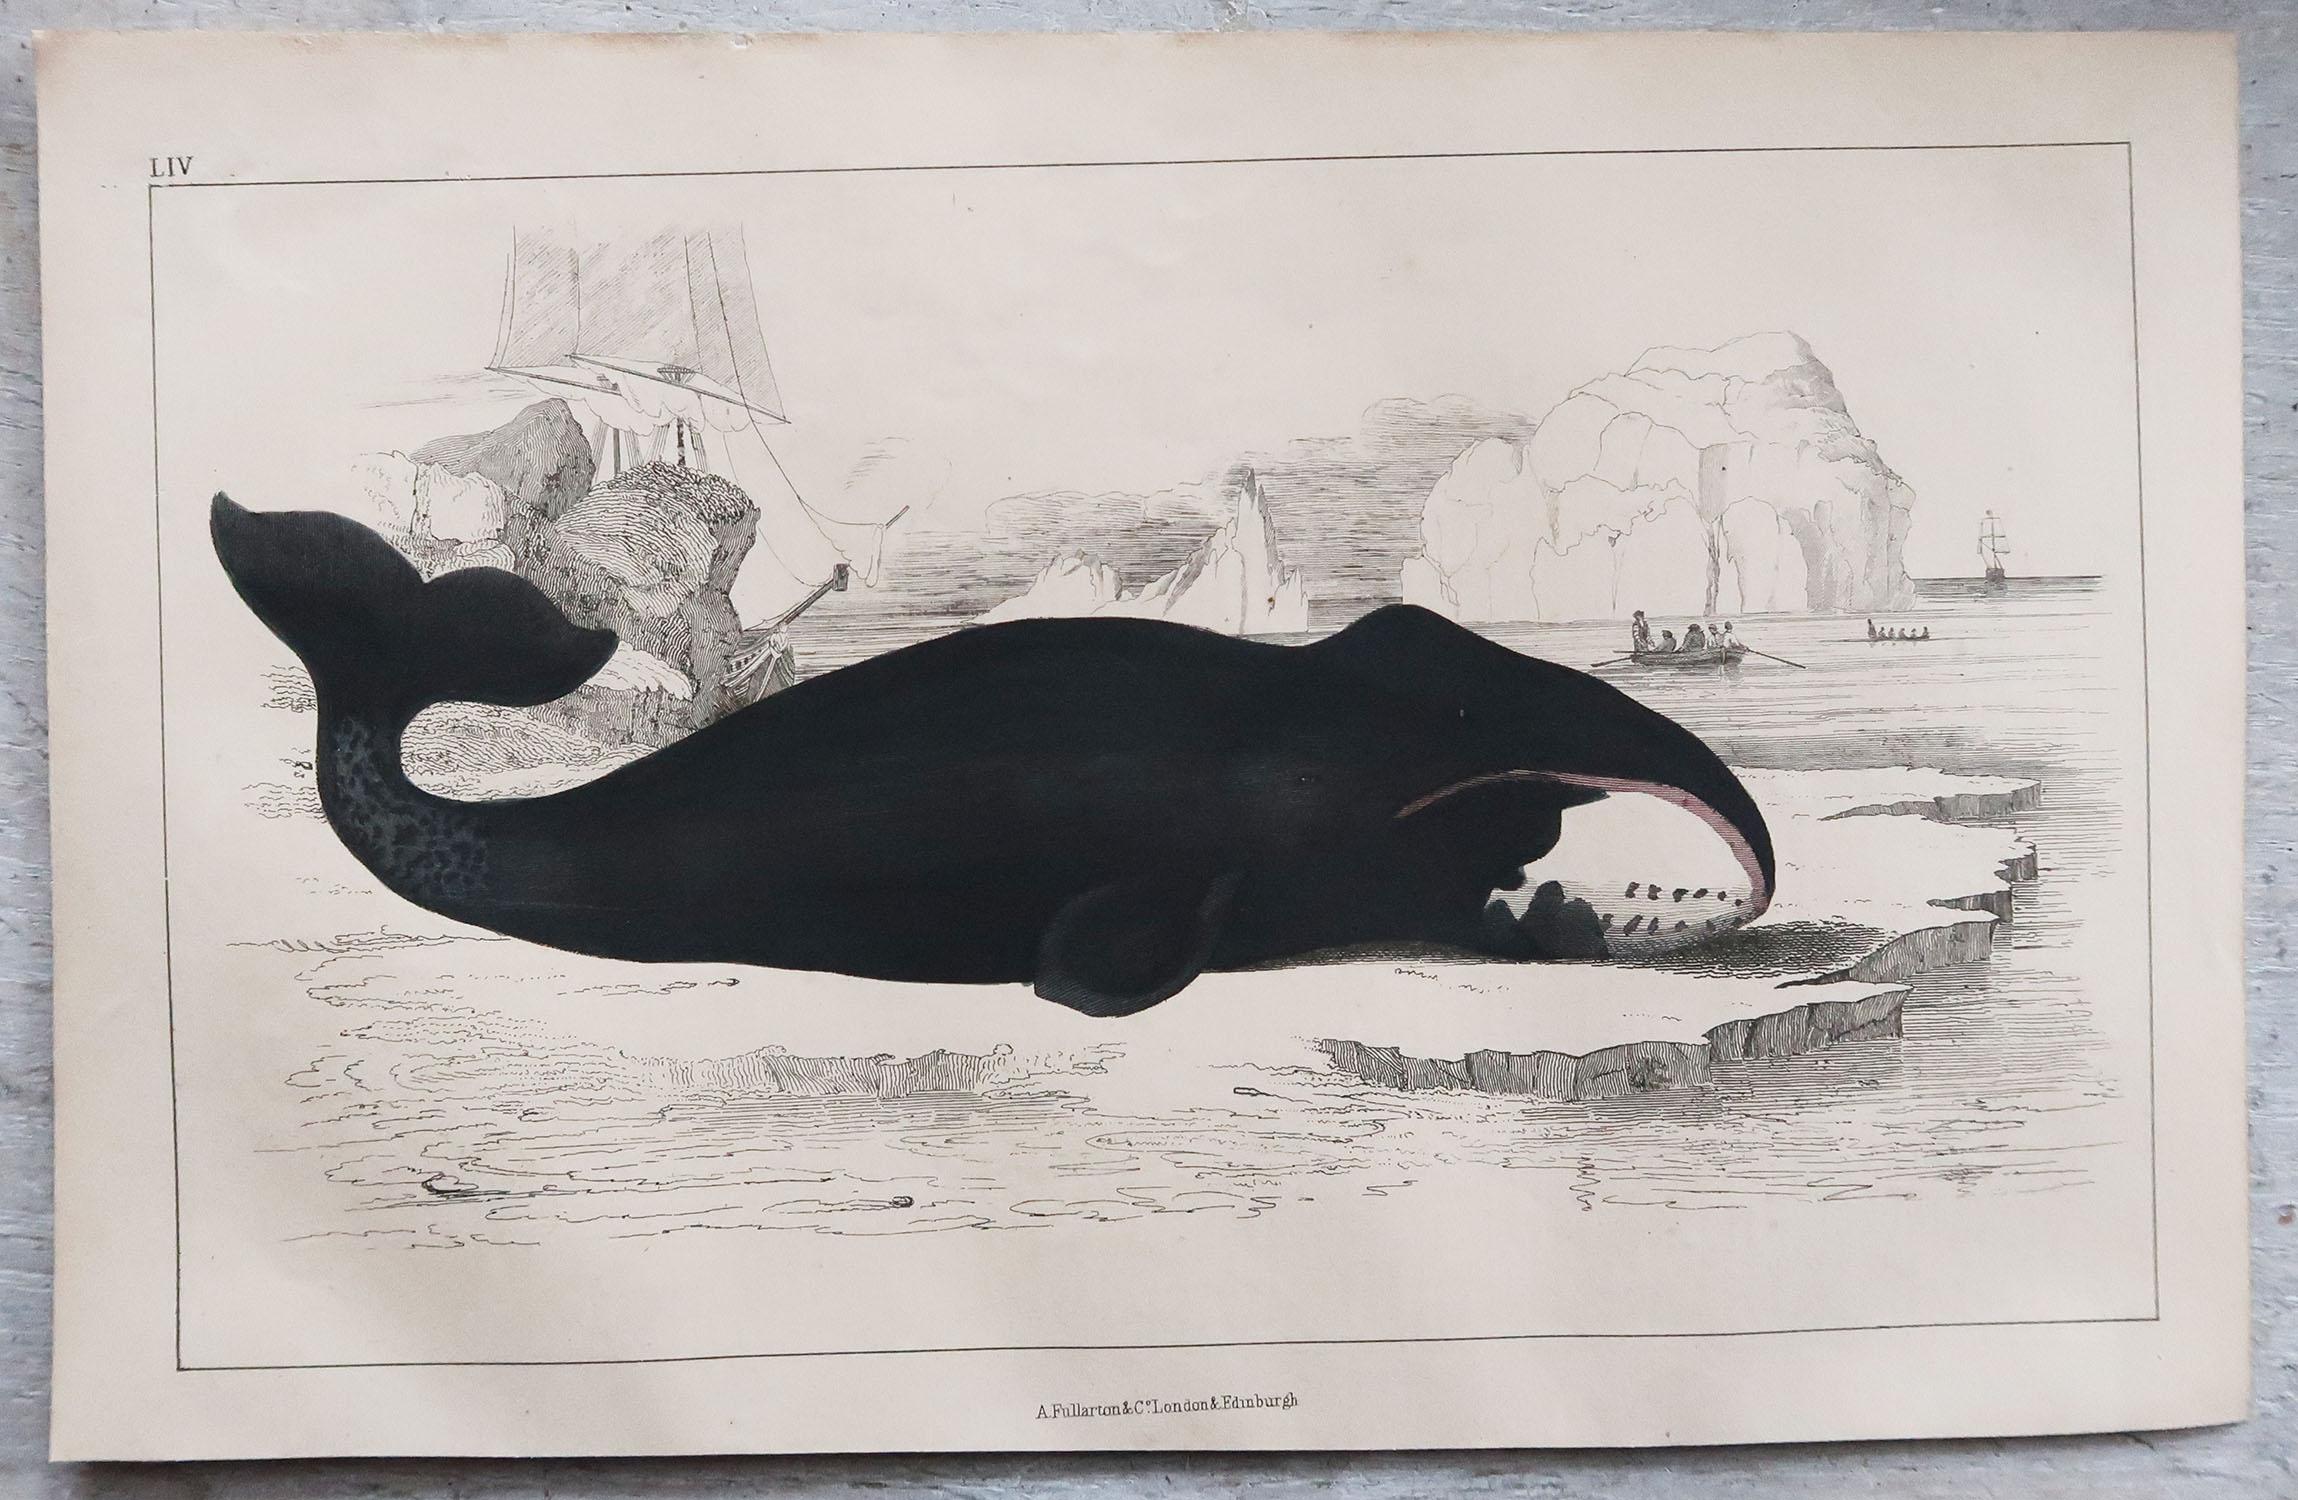 Folk Art Original Antique Print of a Whale, 1847 'Unframed'